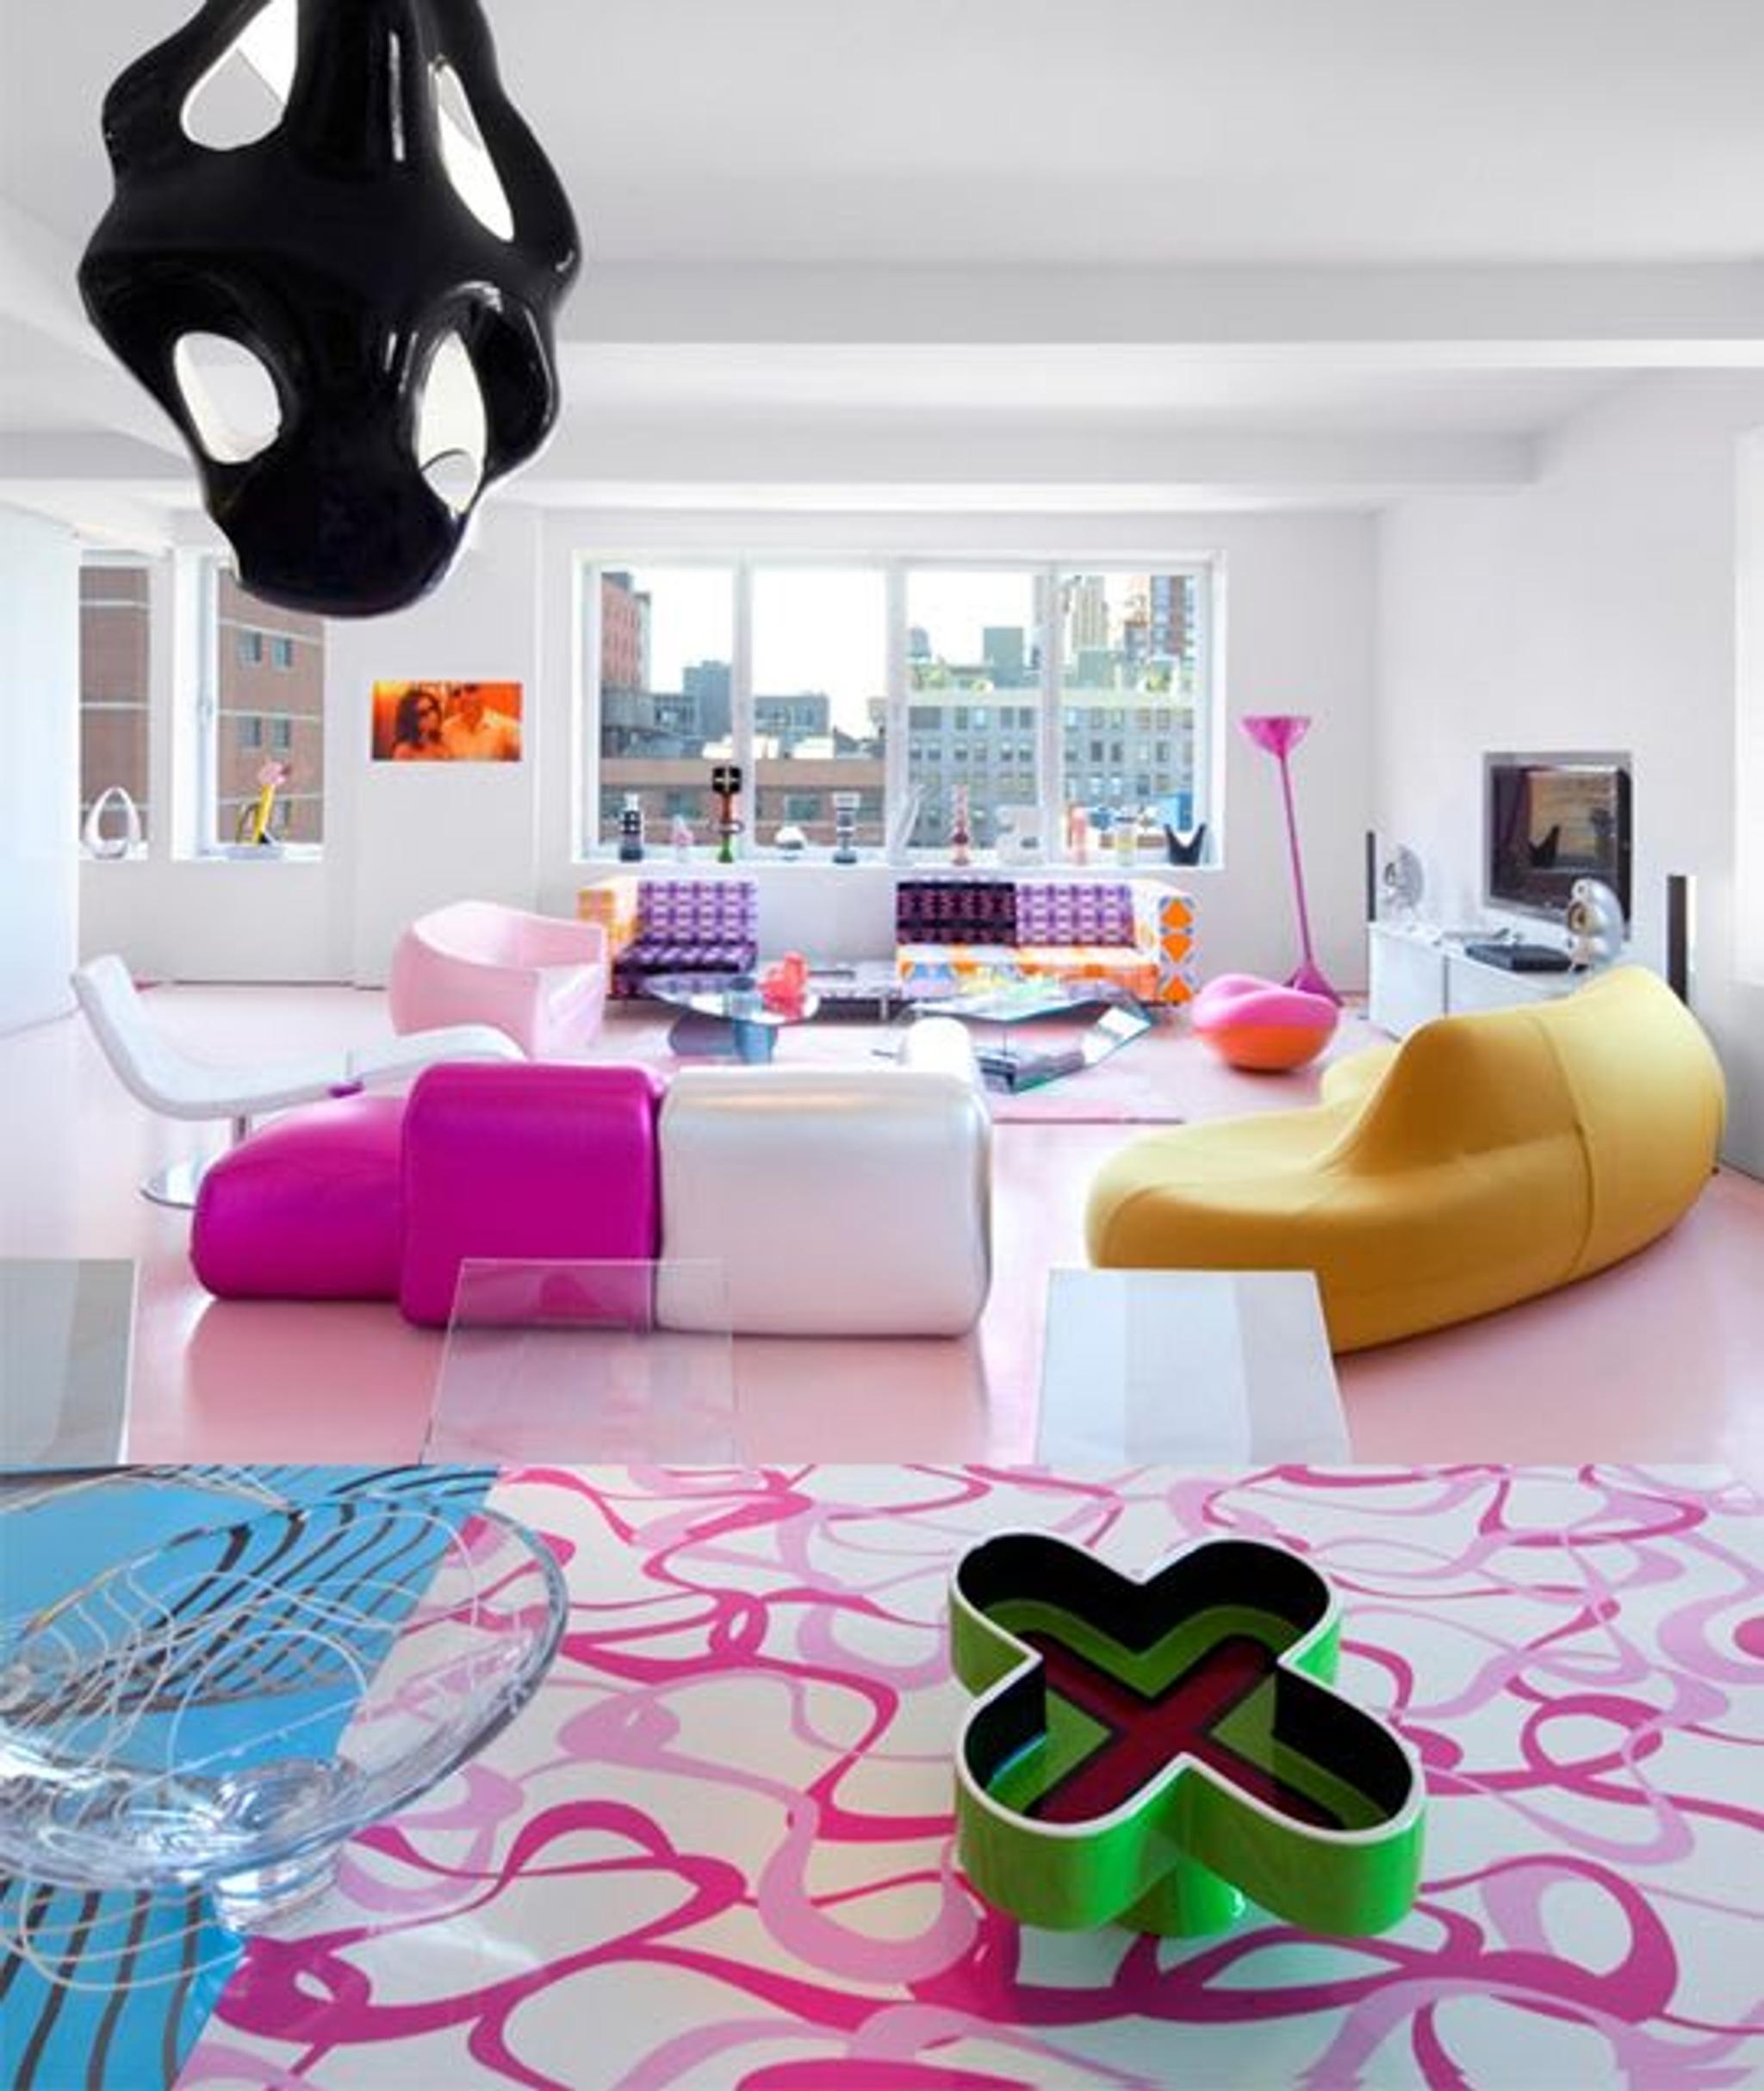 Karim Rashid's New York Loft interiors